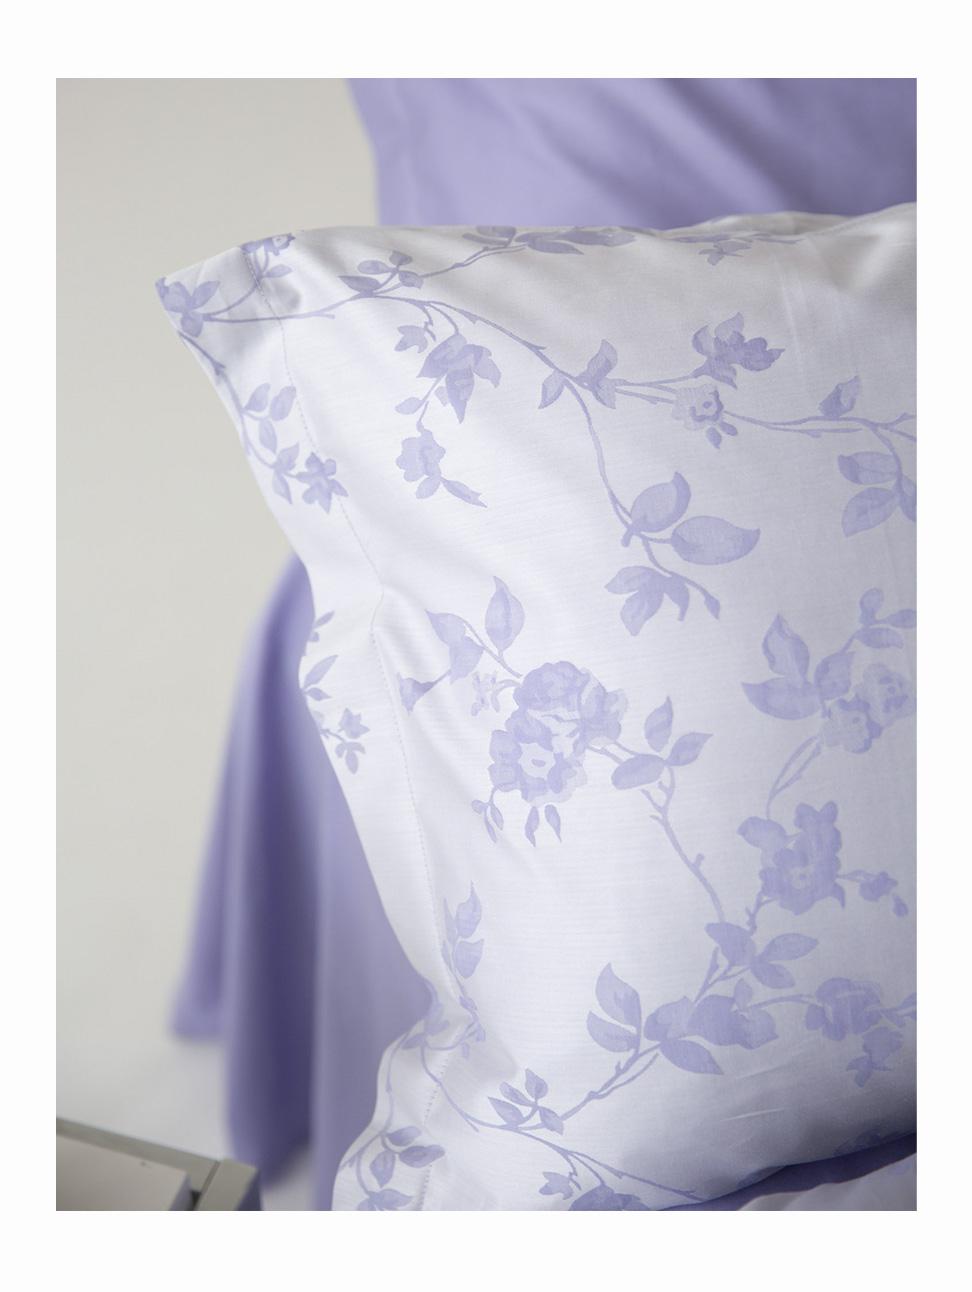 Комплект постельного белья Classic Lavender